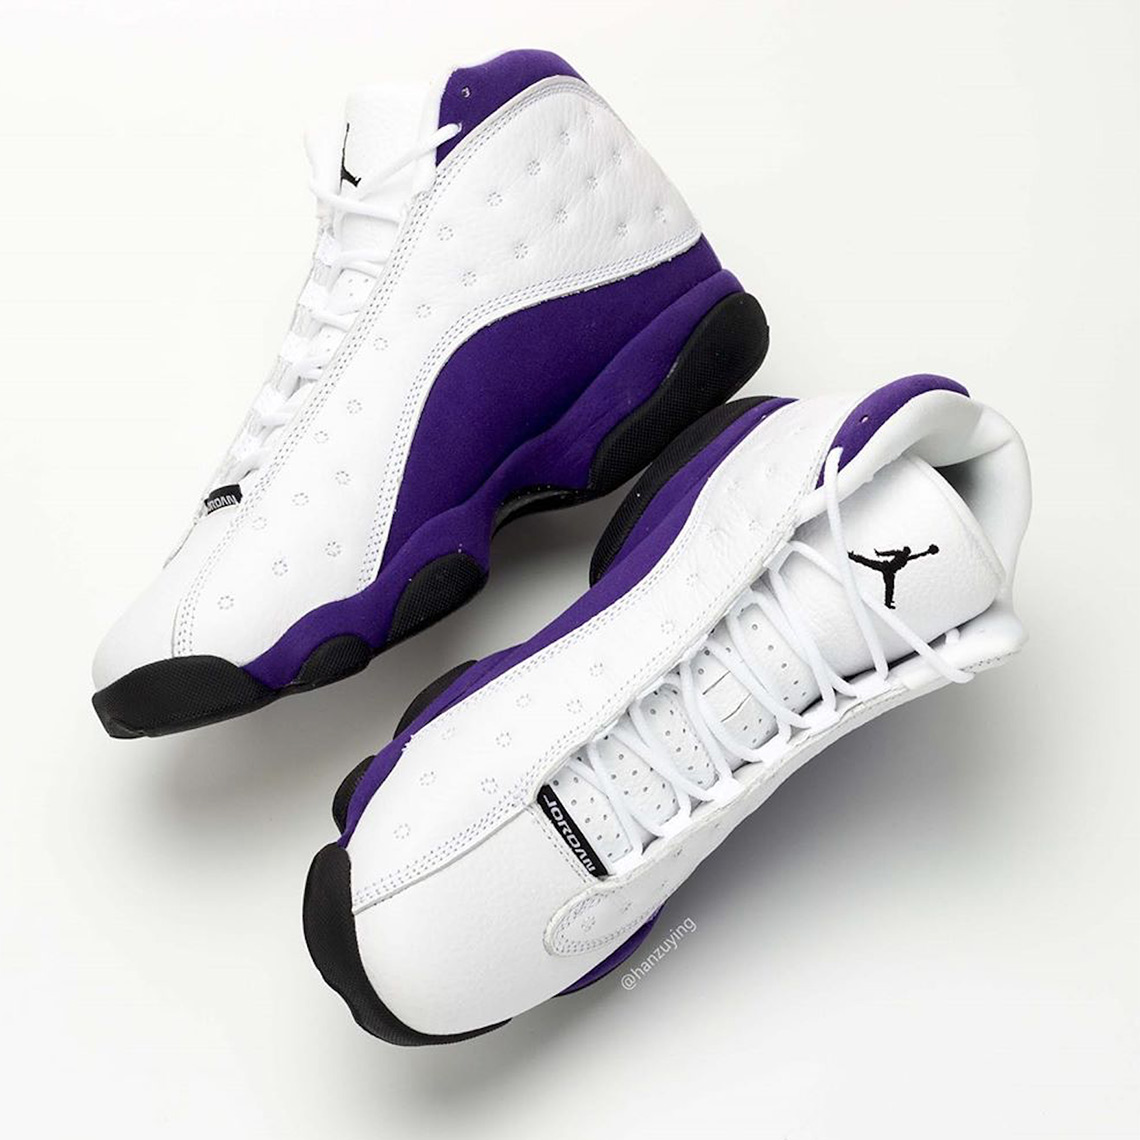 Air Jordan 13 Lakers 414571-105 Release Date | SneakerNews.com